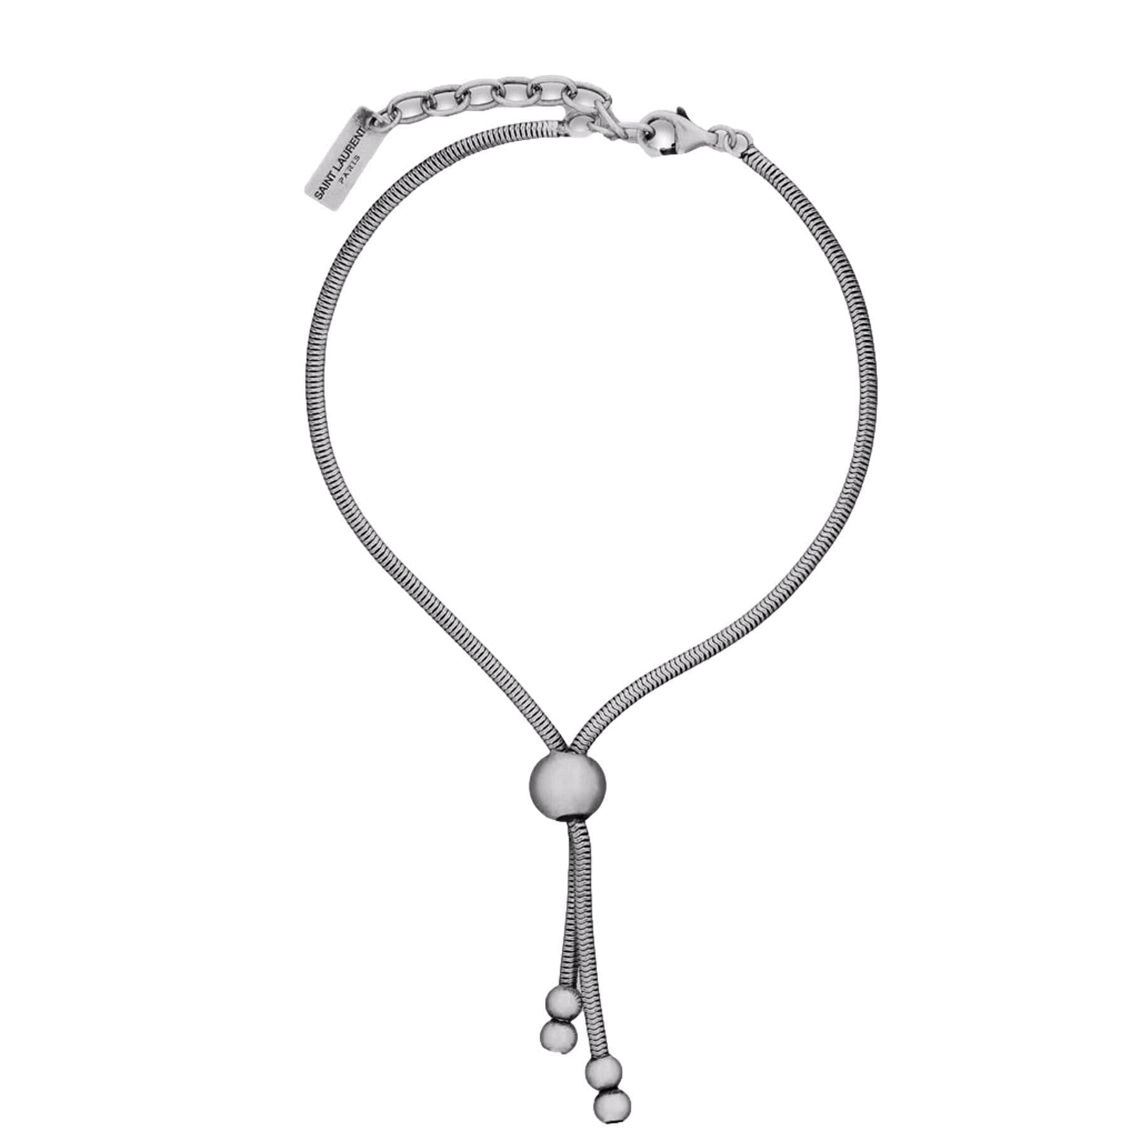 Saint Laurent Silver Bolo Tie Bracelet Large (New) - Image 2 of 3